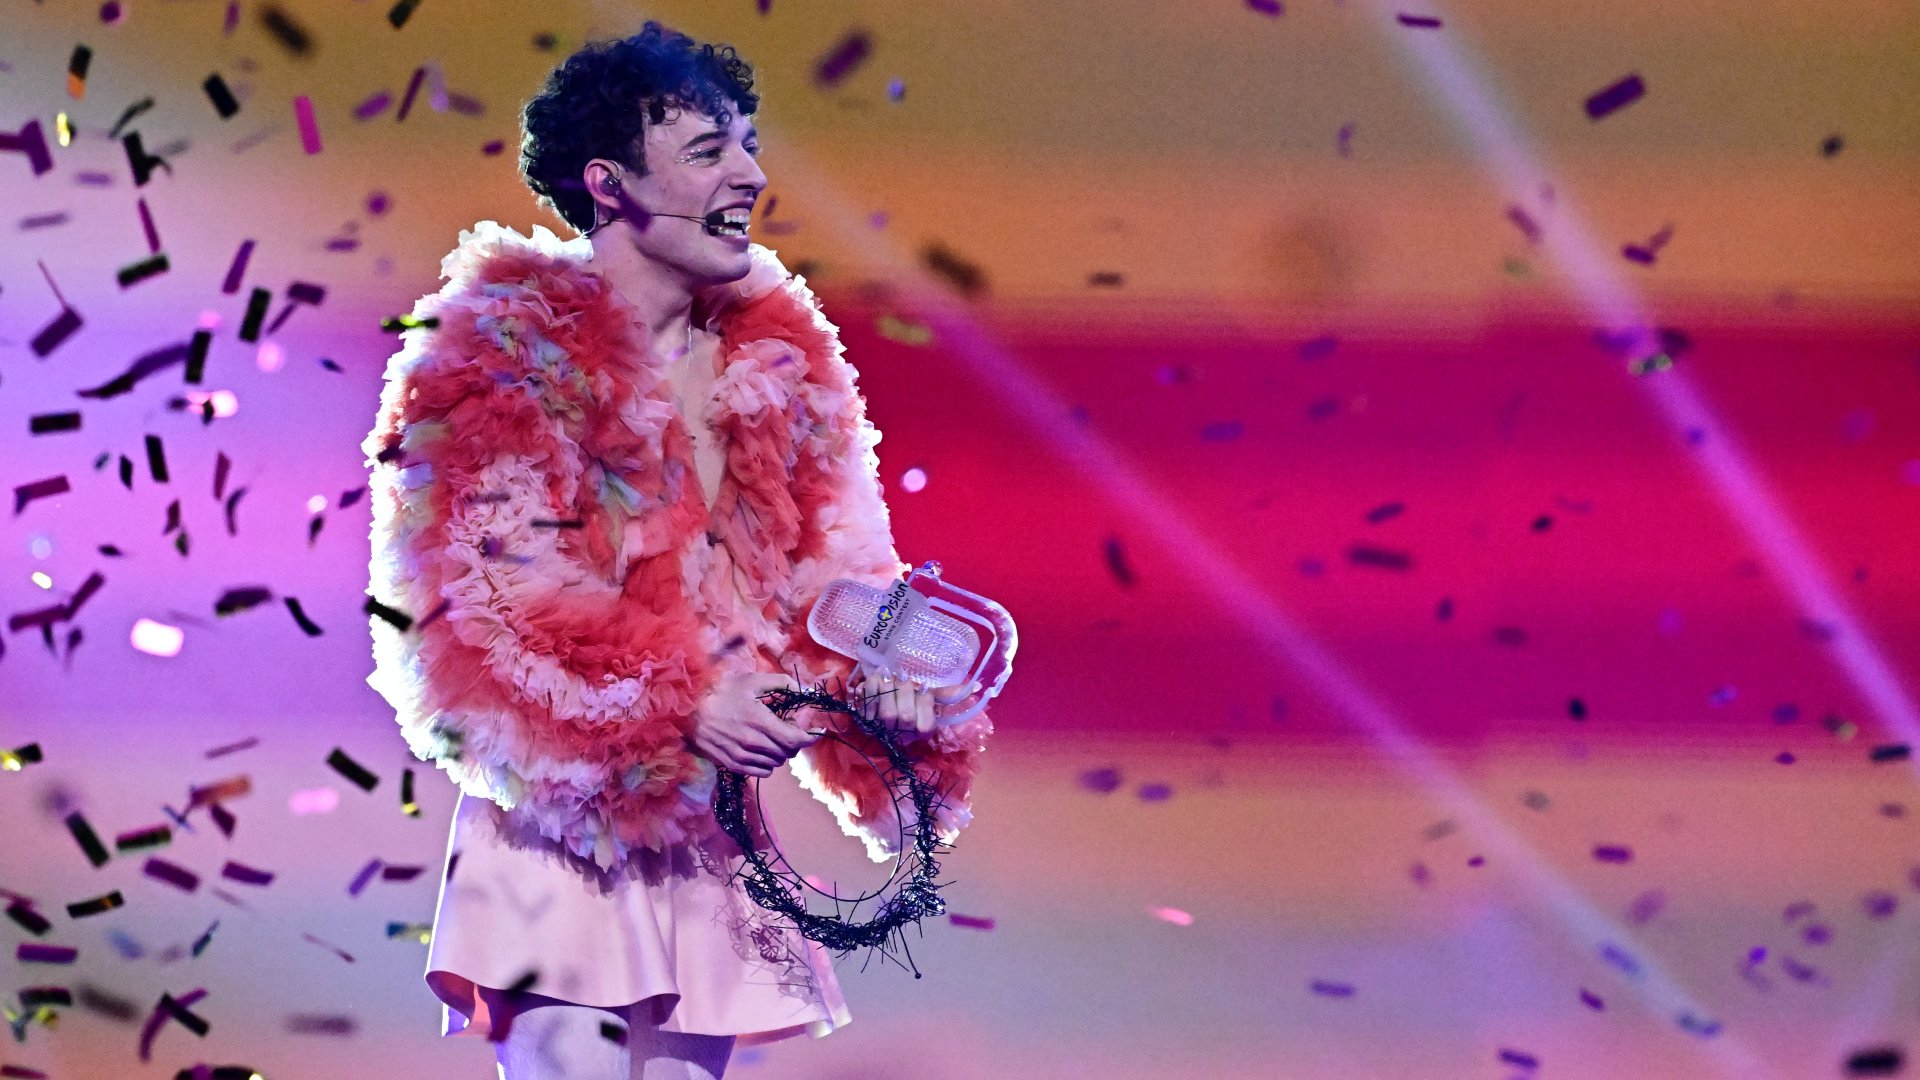 Nembináris énekes nyerte az Eurovíziós Dalfesztivált | nlc